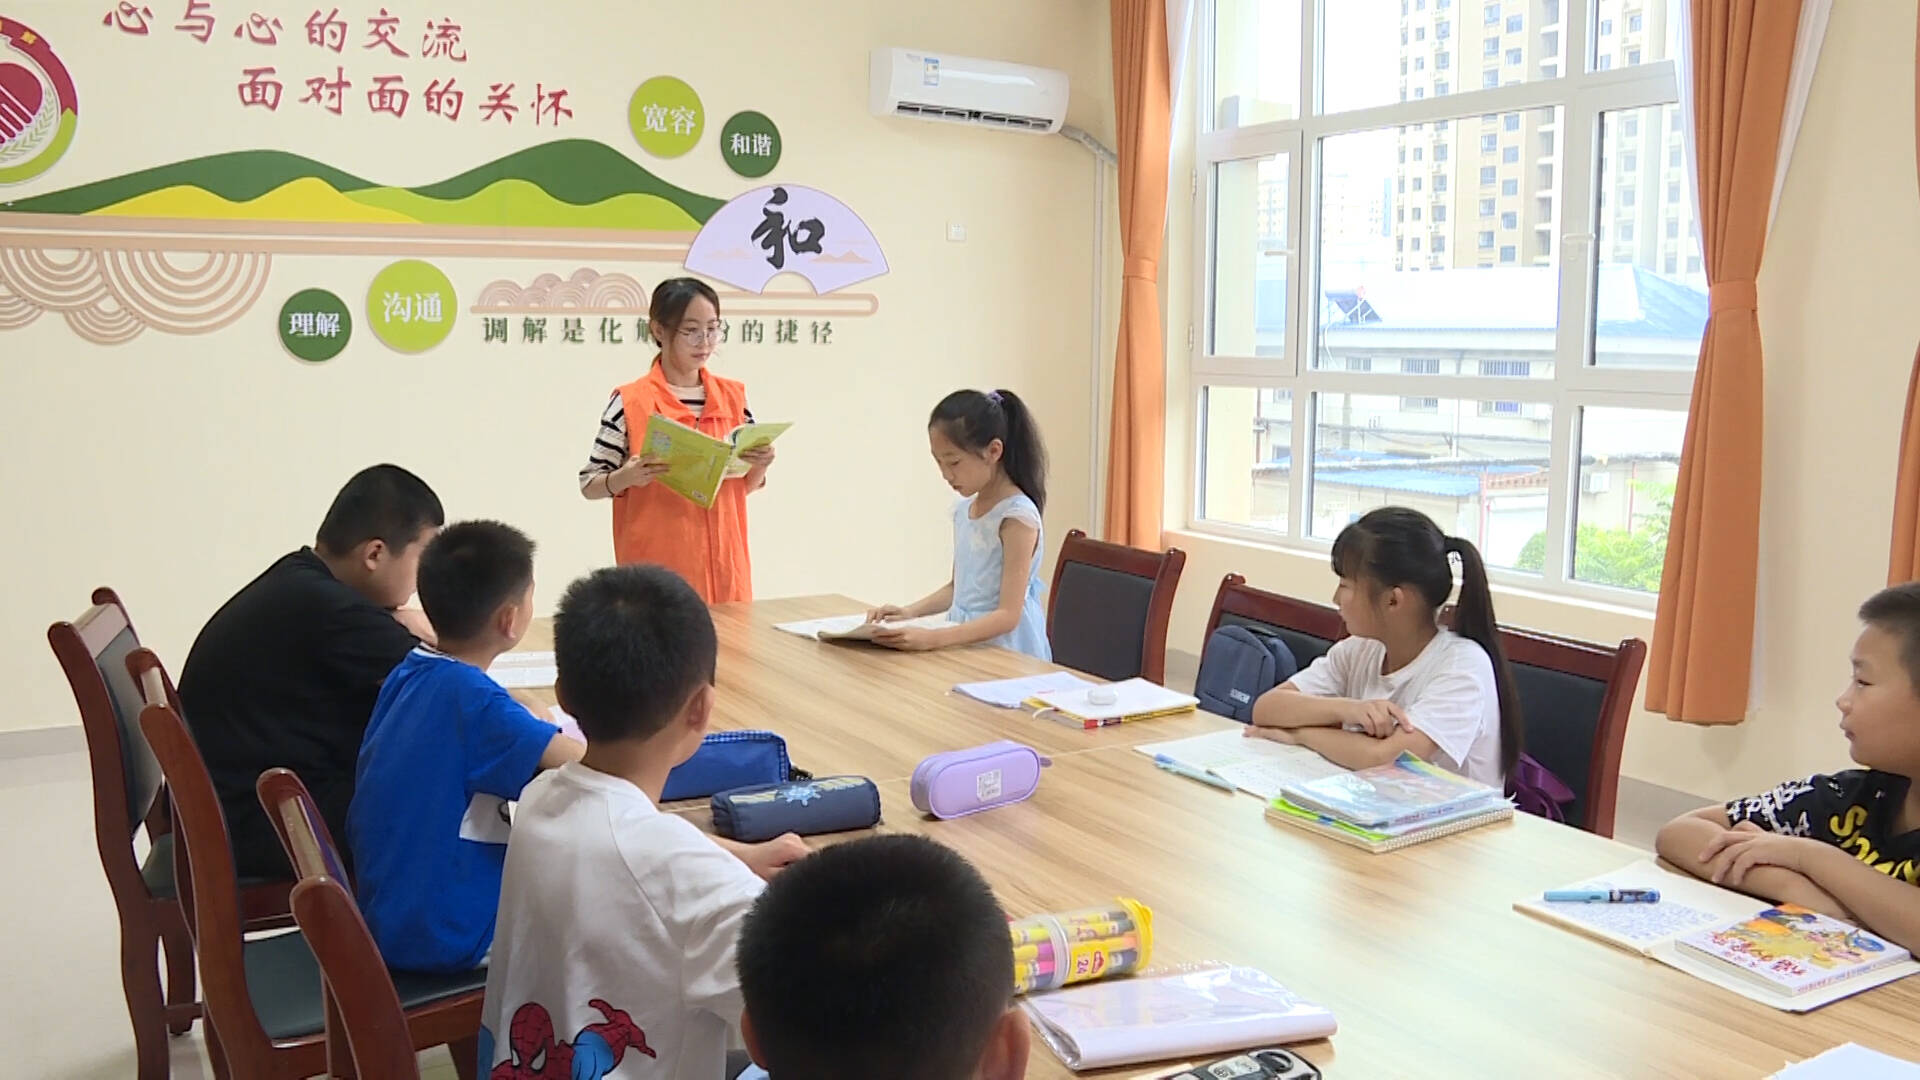 平原县招募大学生志愿者开展暑期公益课堂，让孩子们乐享假期